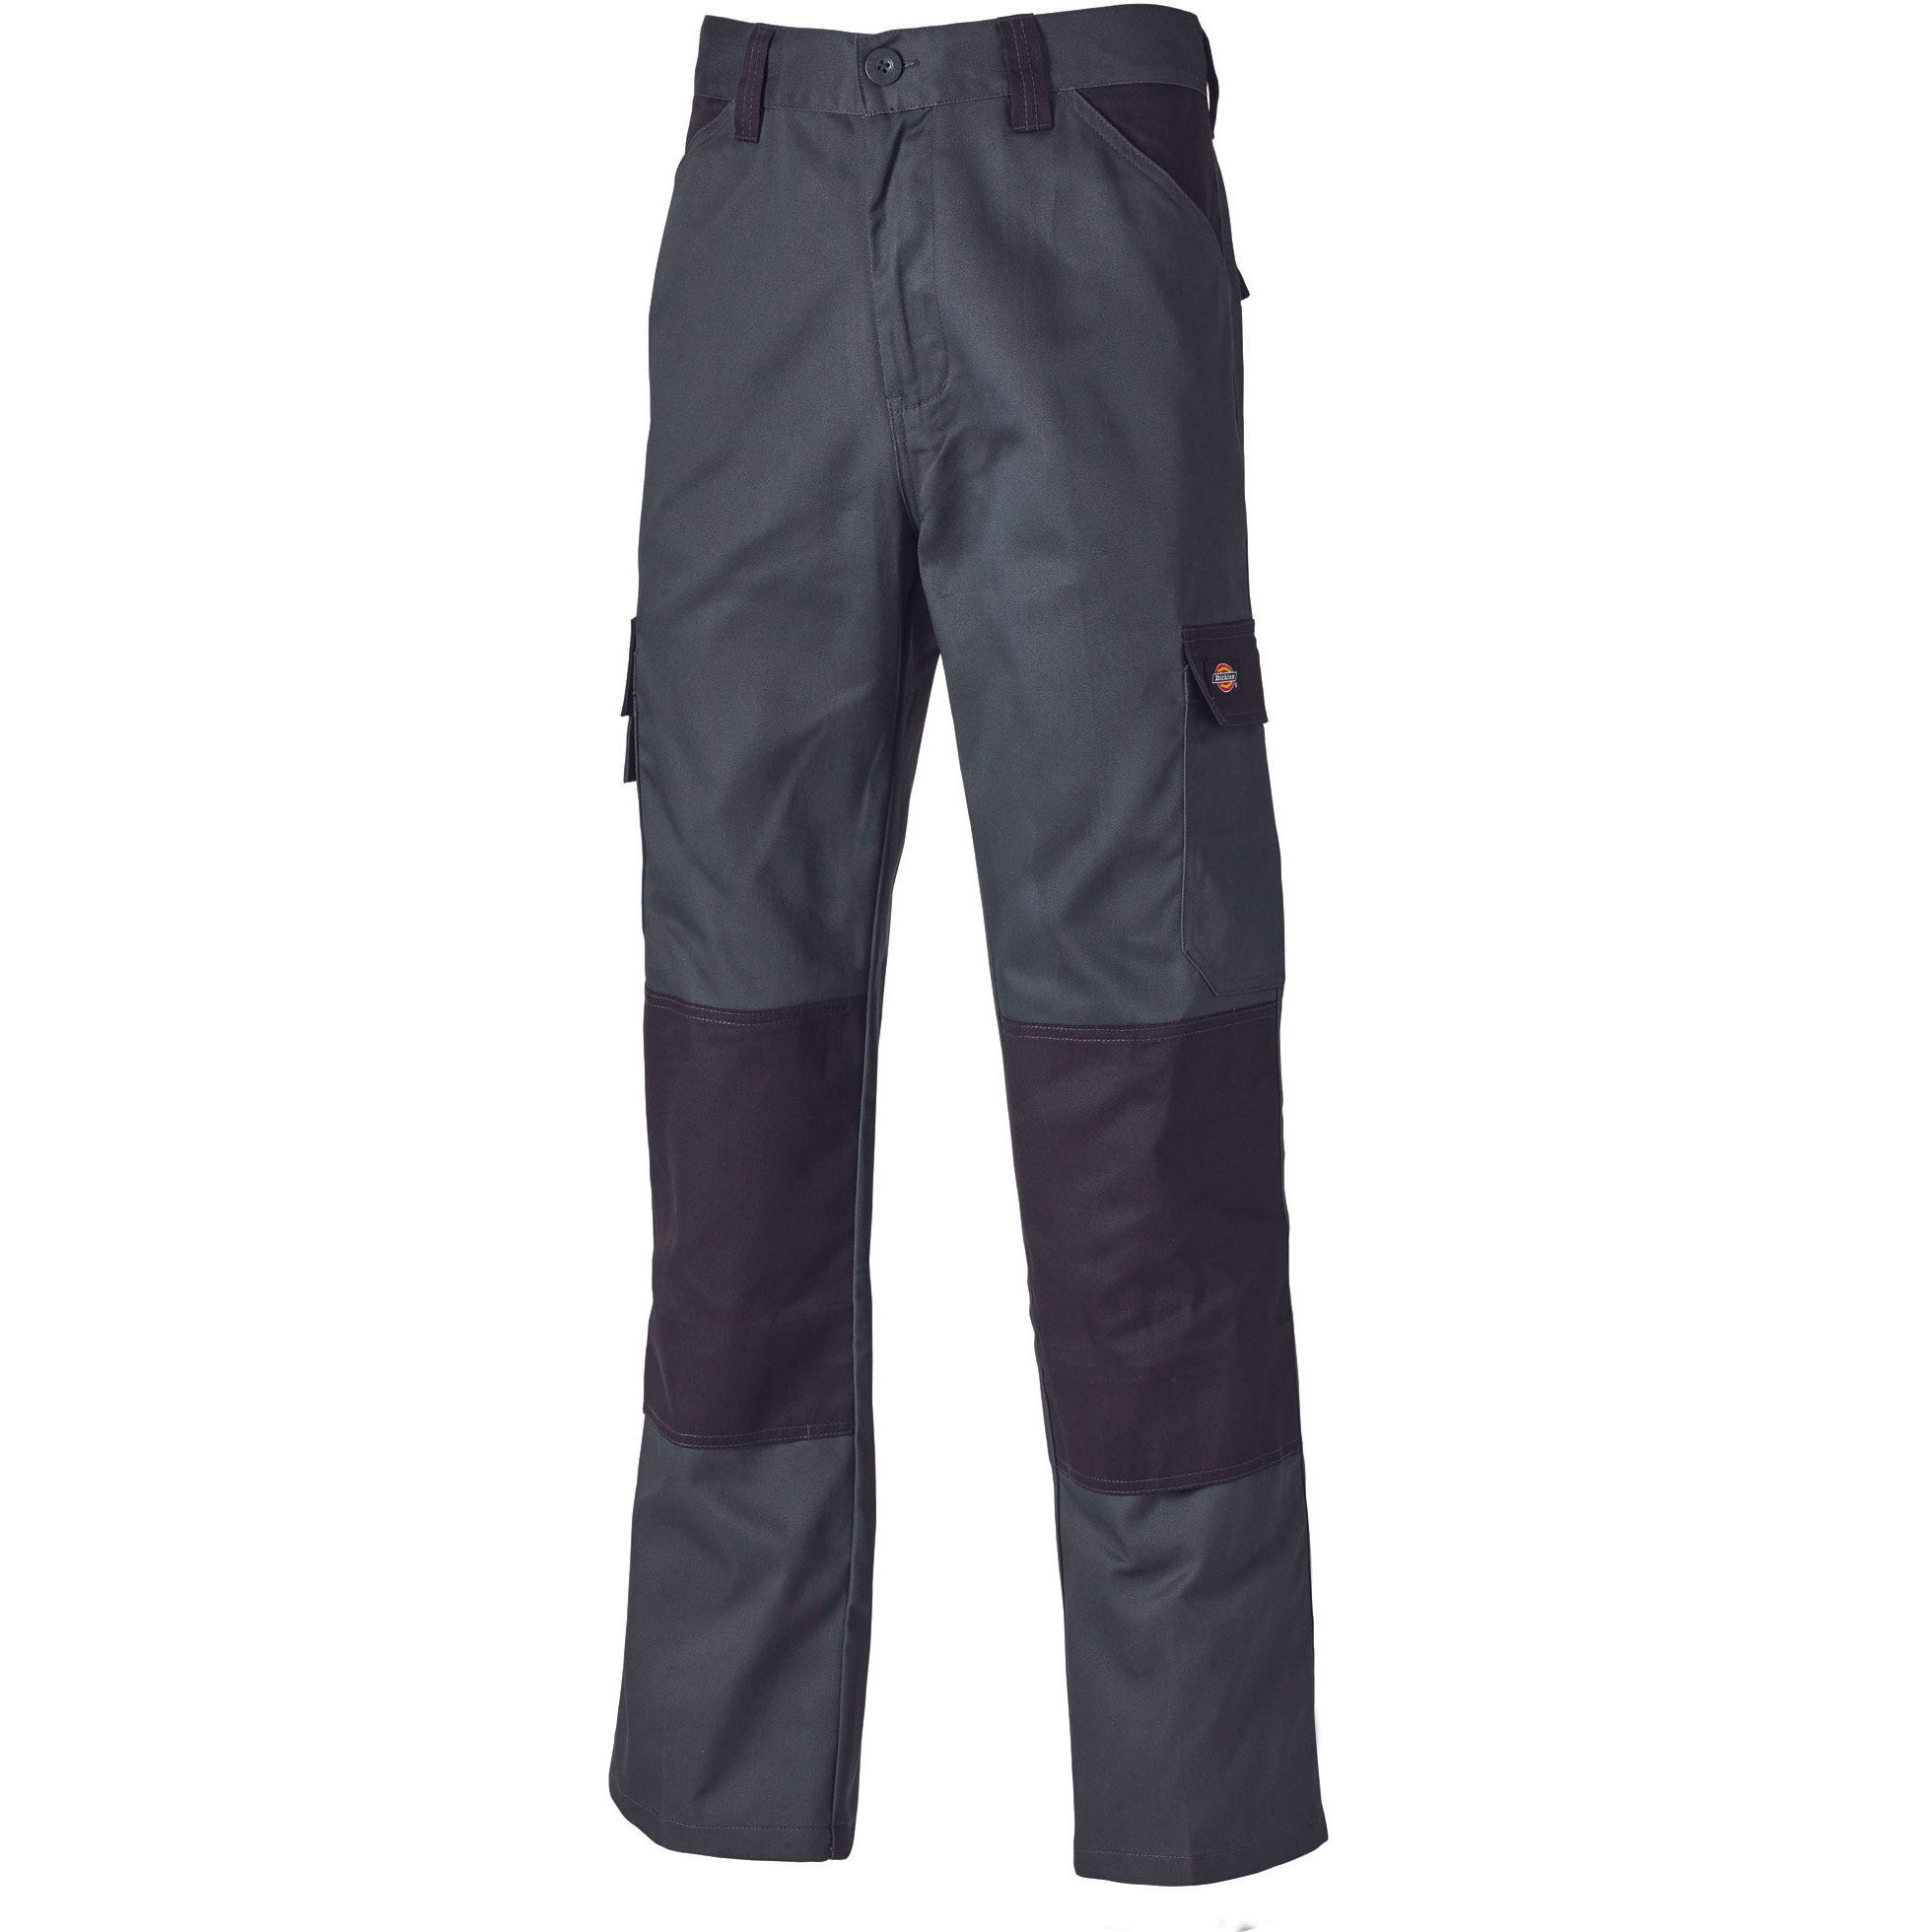 Pantalon Everyday Gris et noir- Dickies - Taille 44 5